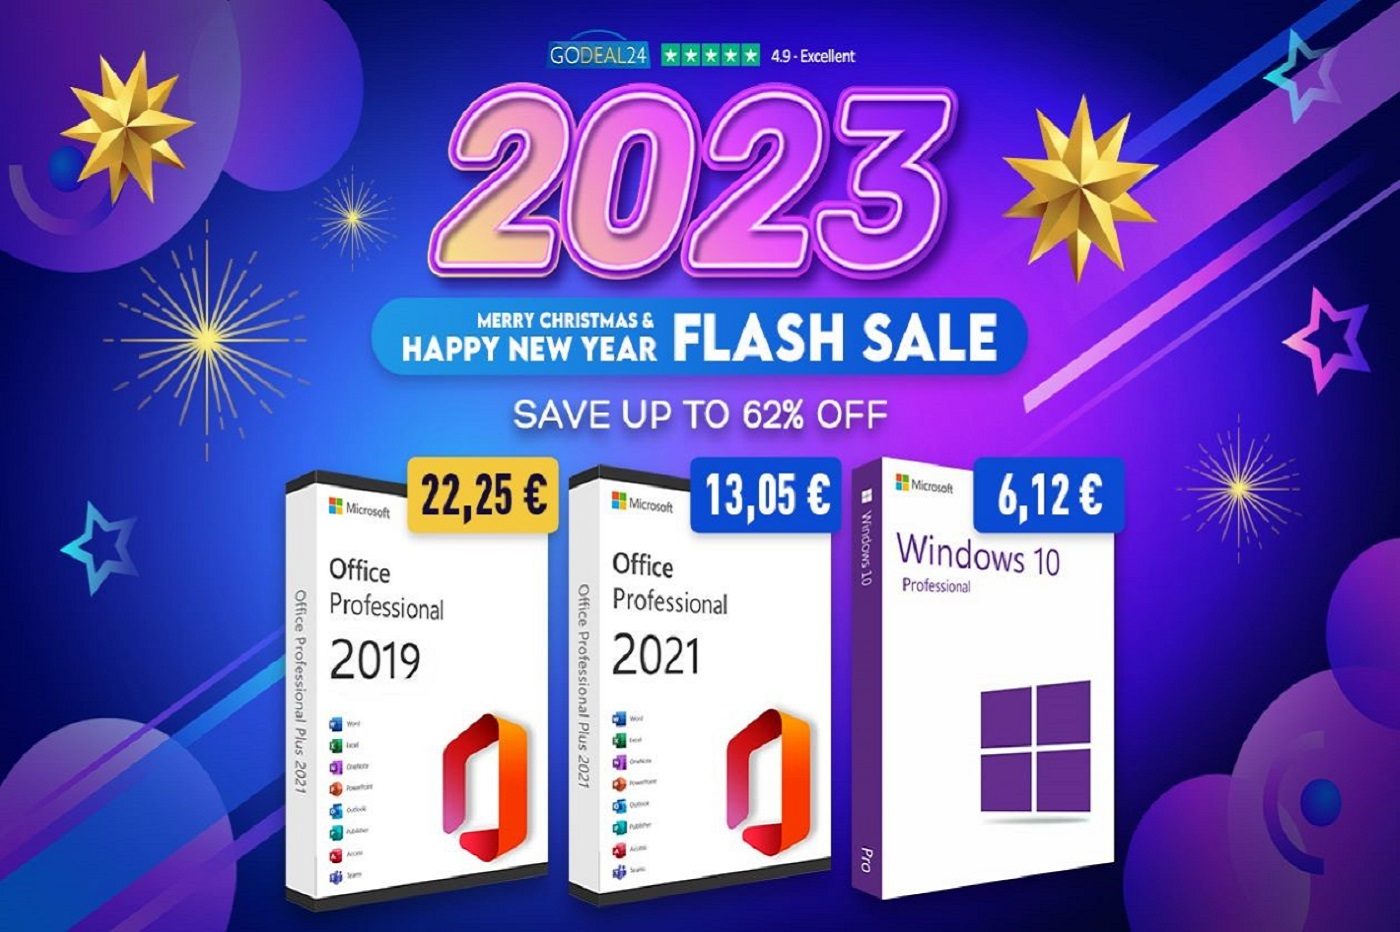 Obtenez Office 2021 à vie à partir de 13.52€ ! Windows 10 stars à 6.14€ !  Plus de réductions à la vente d'automne de Godeal24 ! - Algérie Patriotique